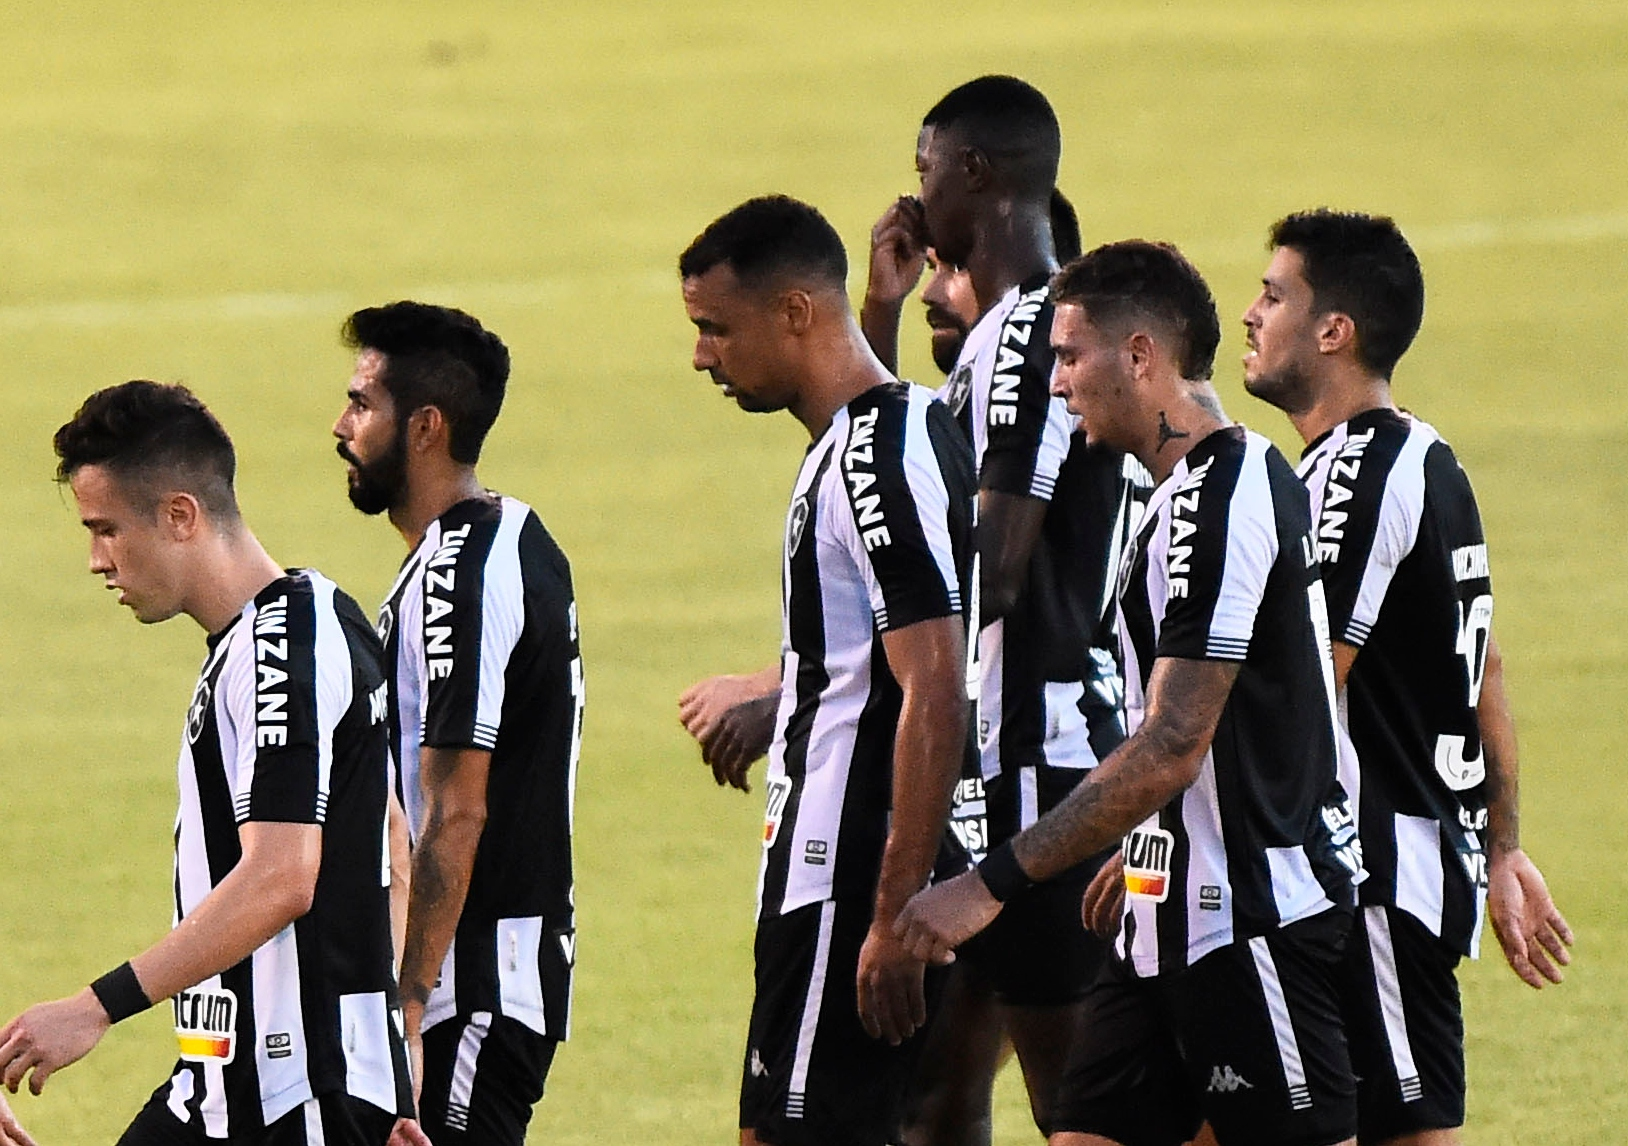 GE Botafogo #106 - Como será a atuação do clube no mercado até o início da Série B?